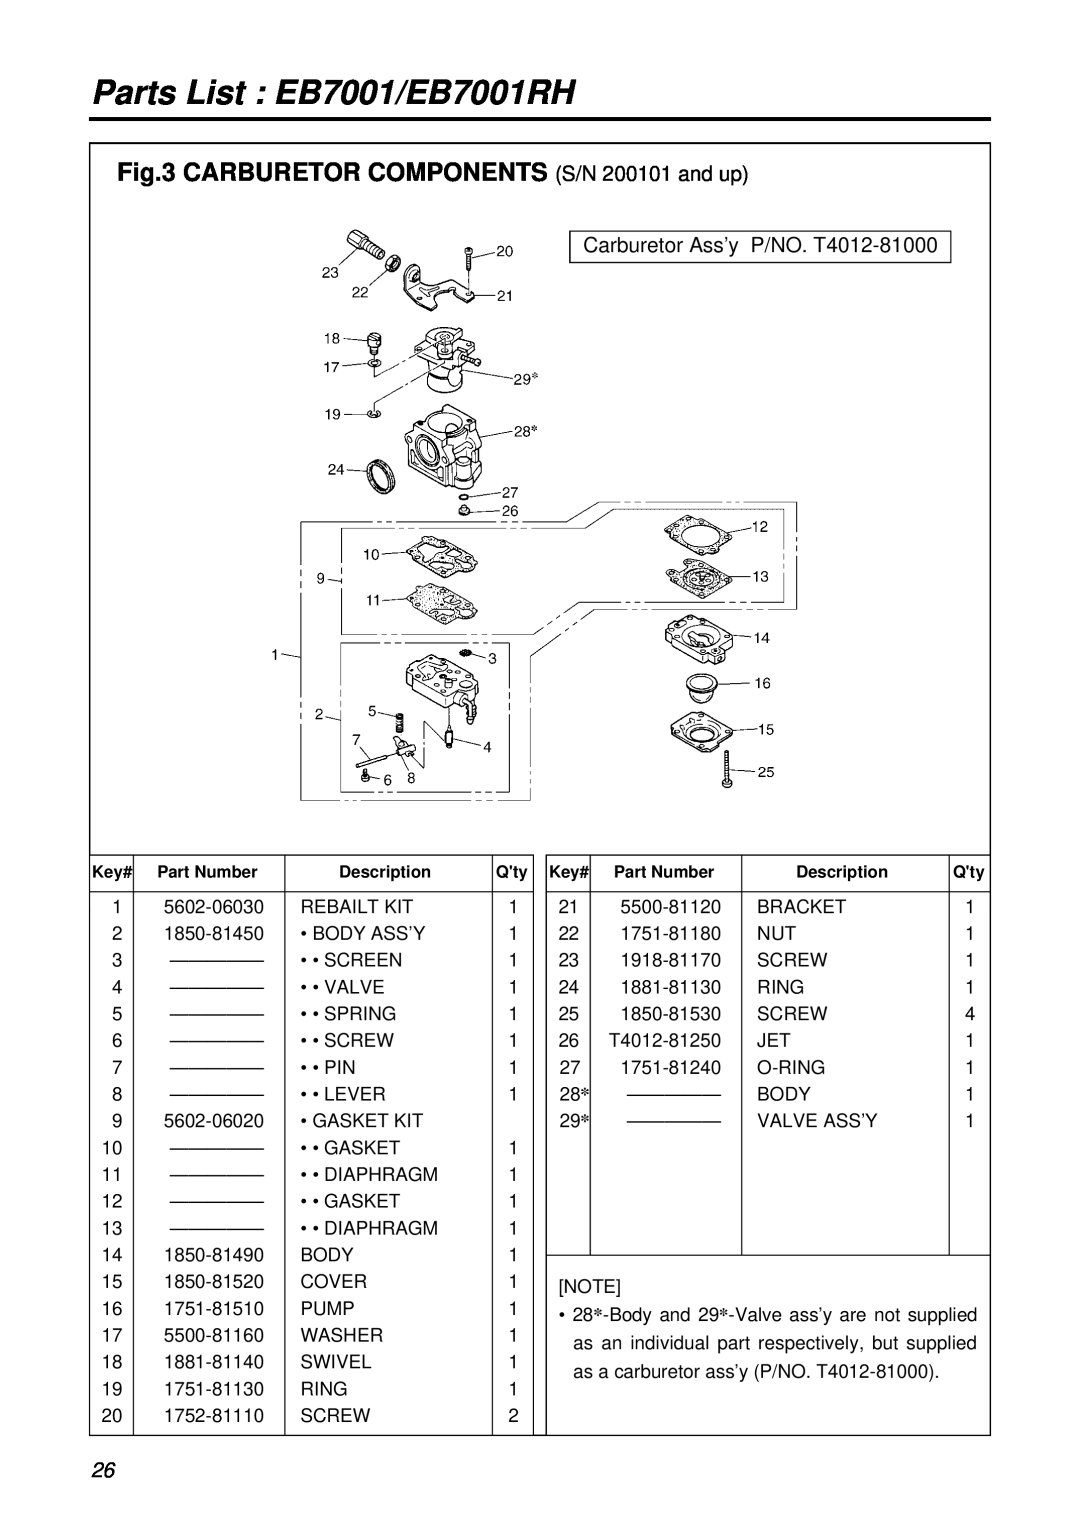 RedMax manual CARBURETOR COMPONENTS S/N 200101 and up, Carburetor Ass’y P/NO. T4012-81000, Parts List EB7001/EB7001RH 